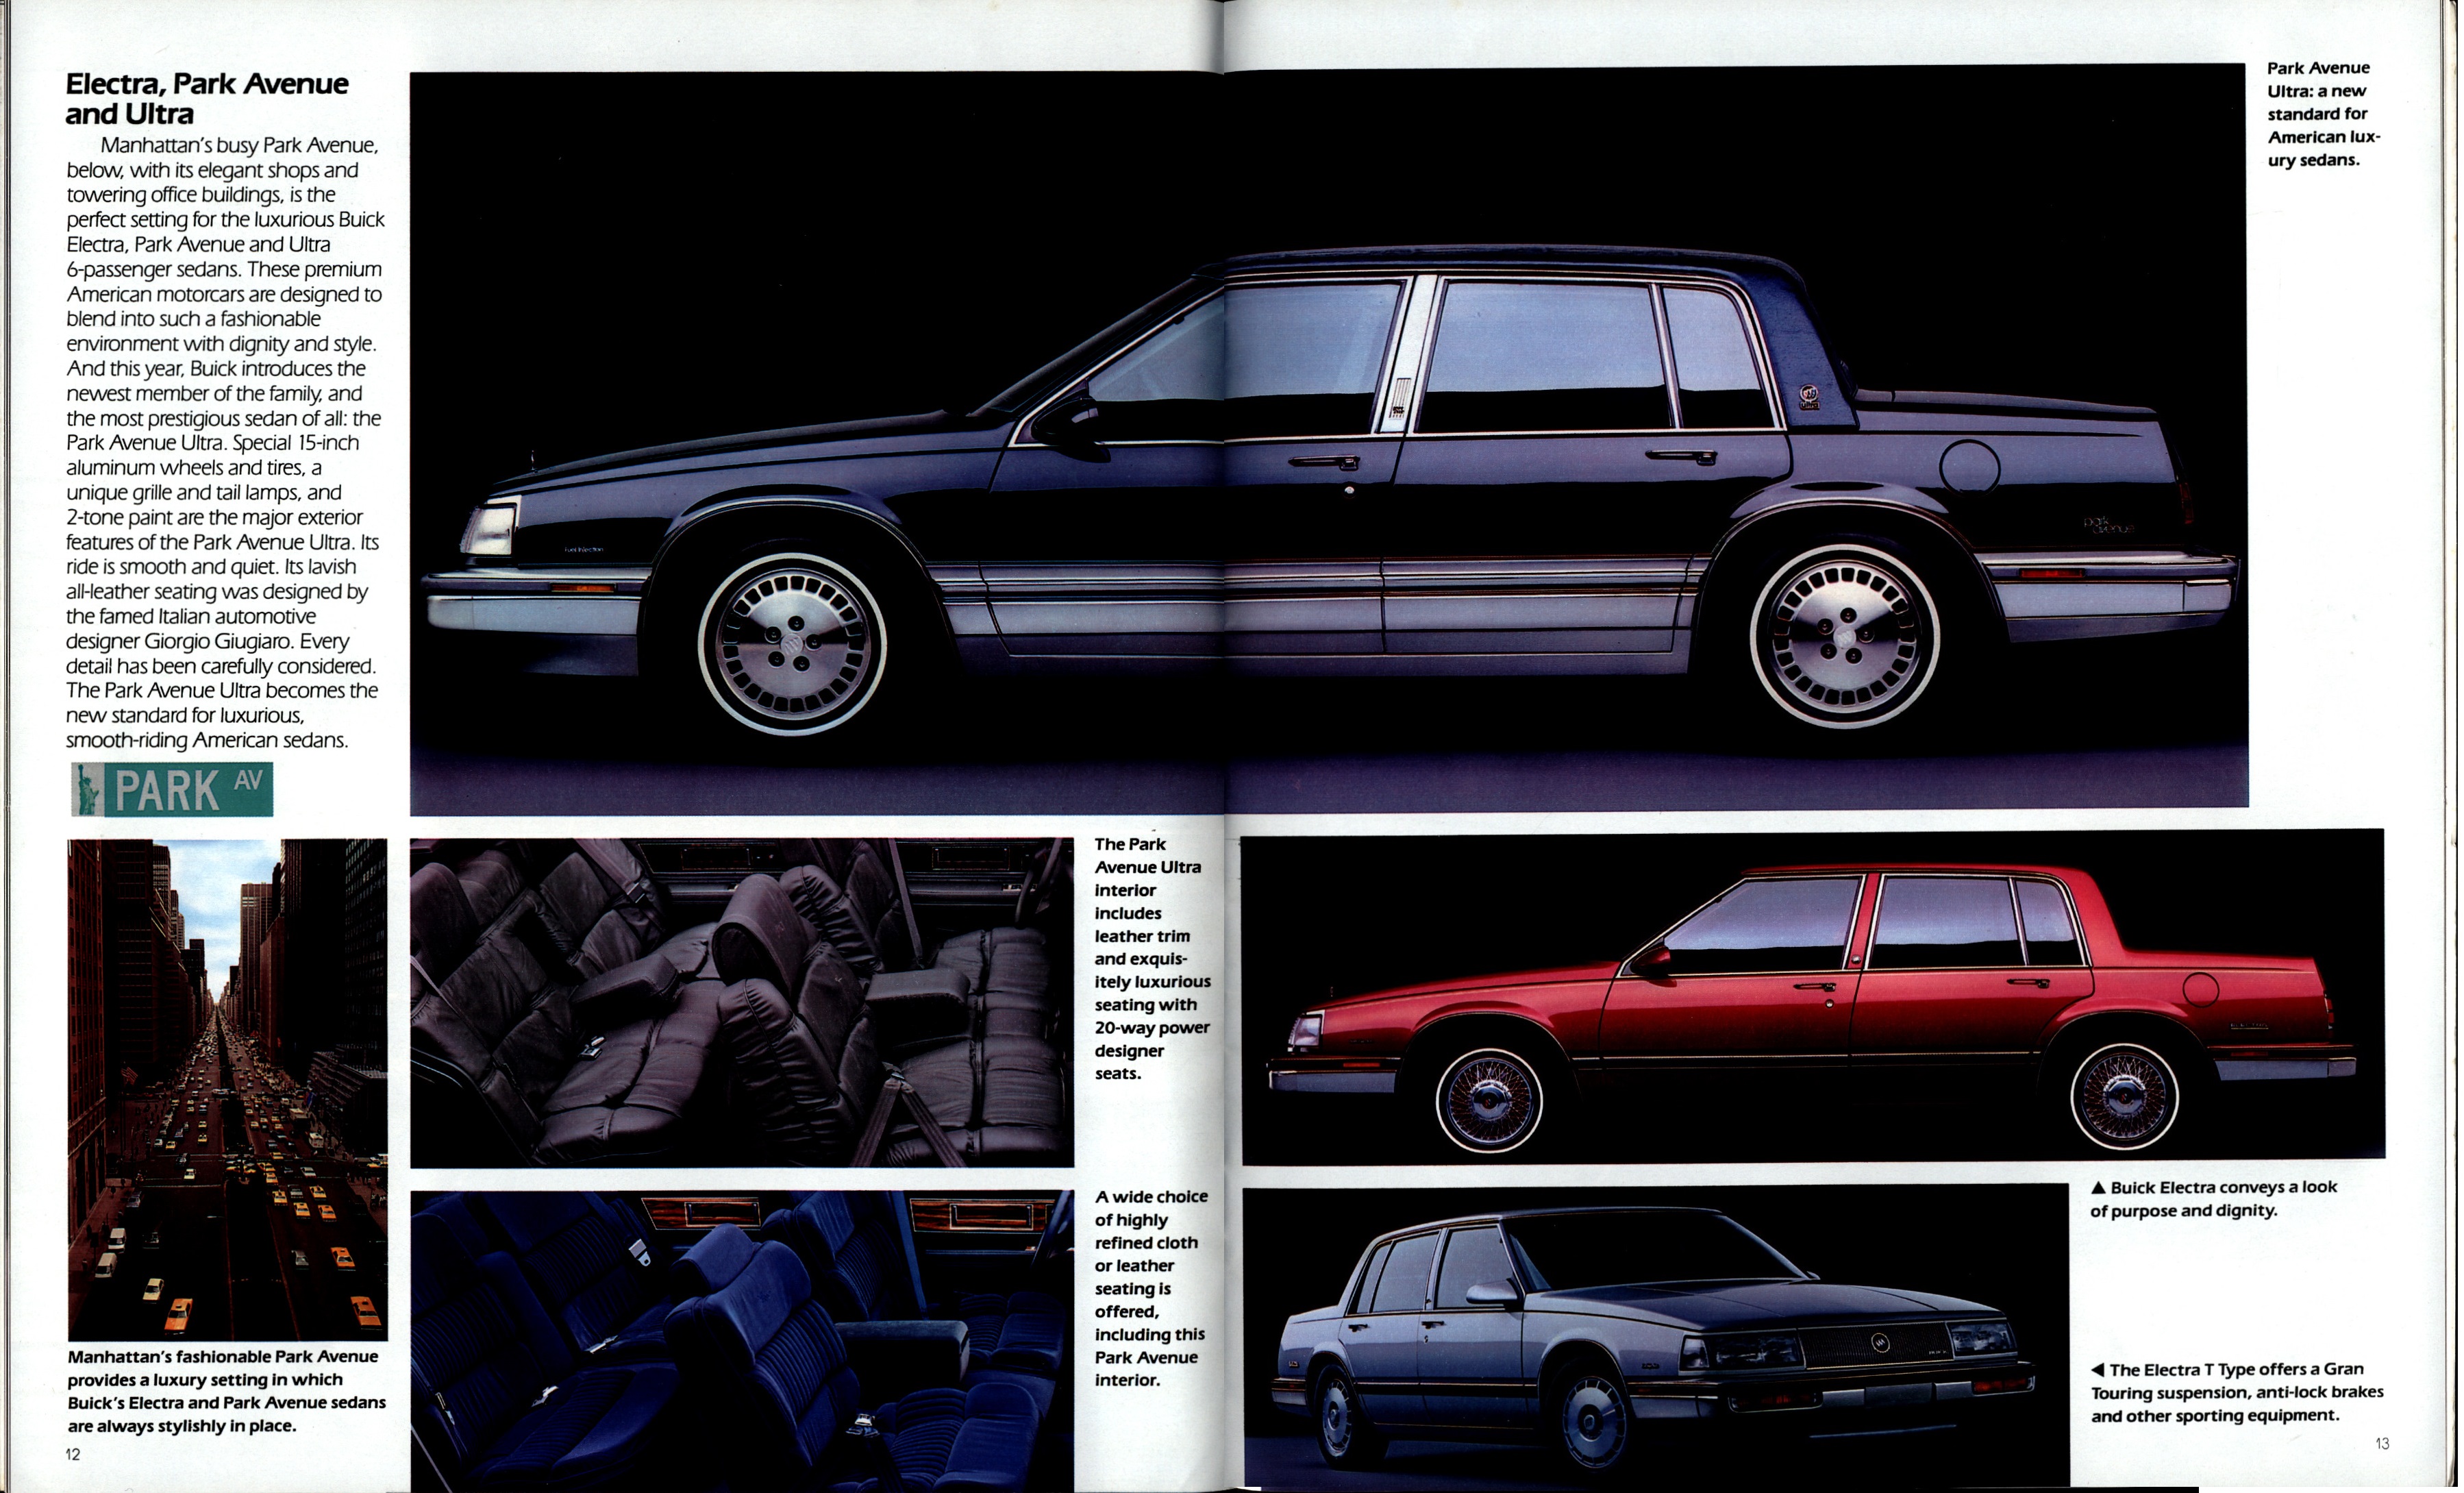 1989 Buick Full Line-12-13